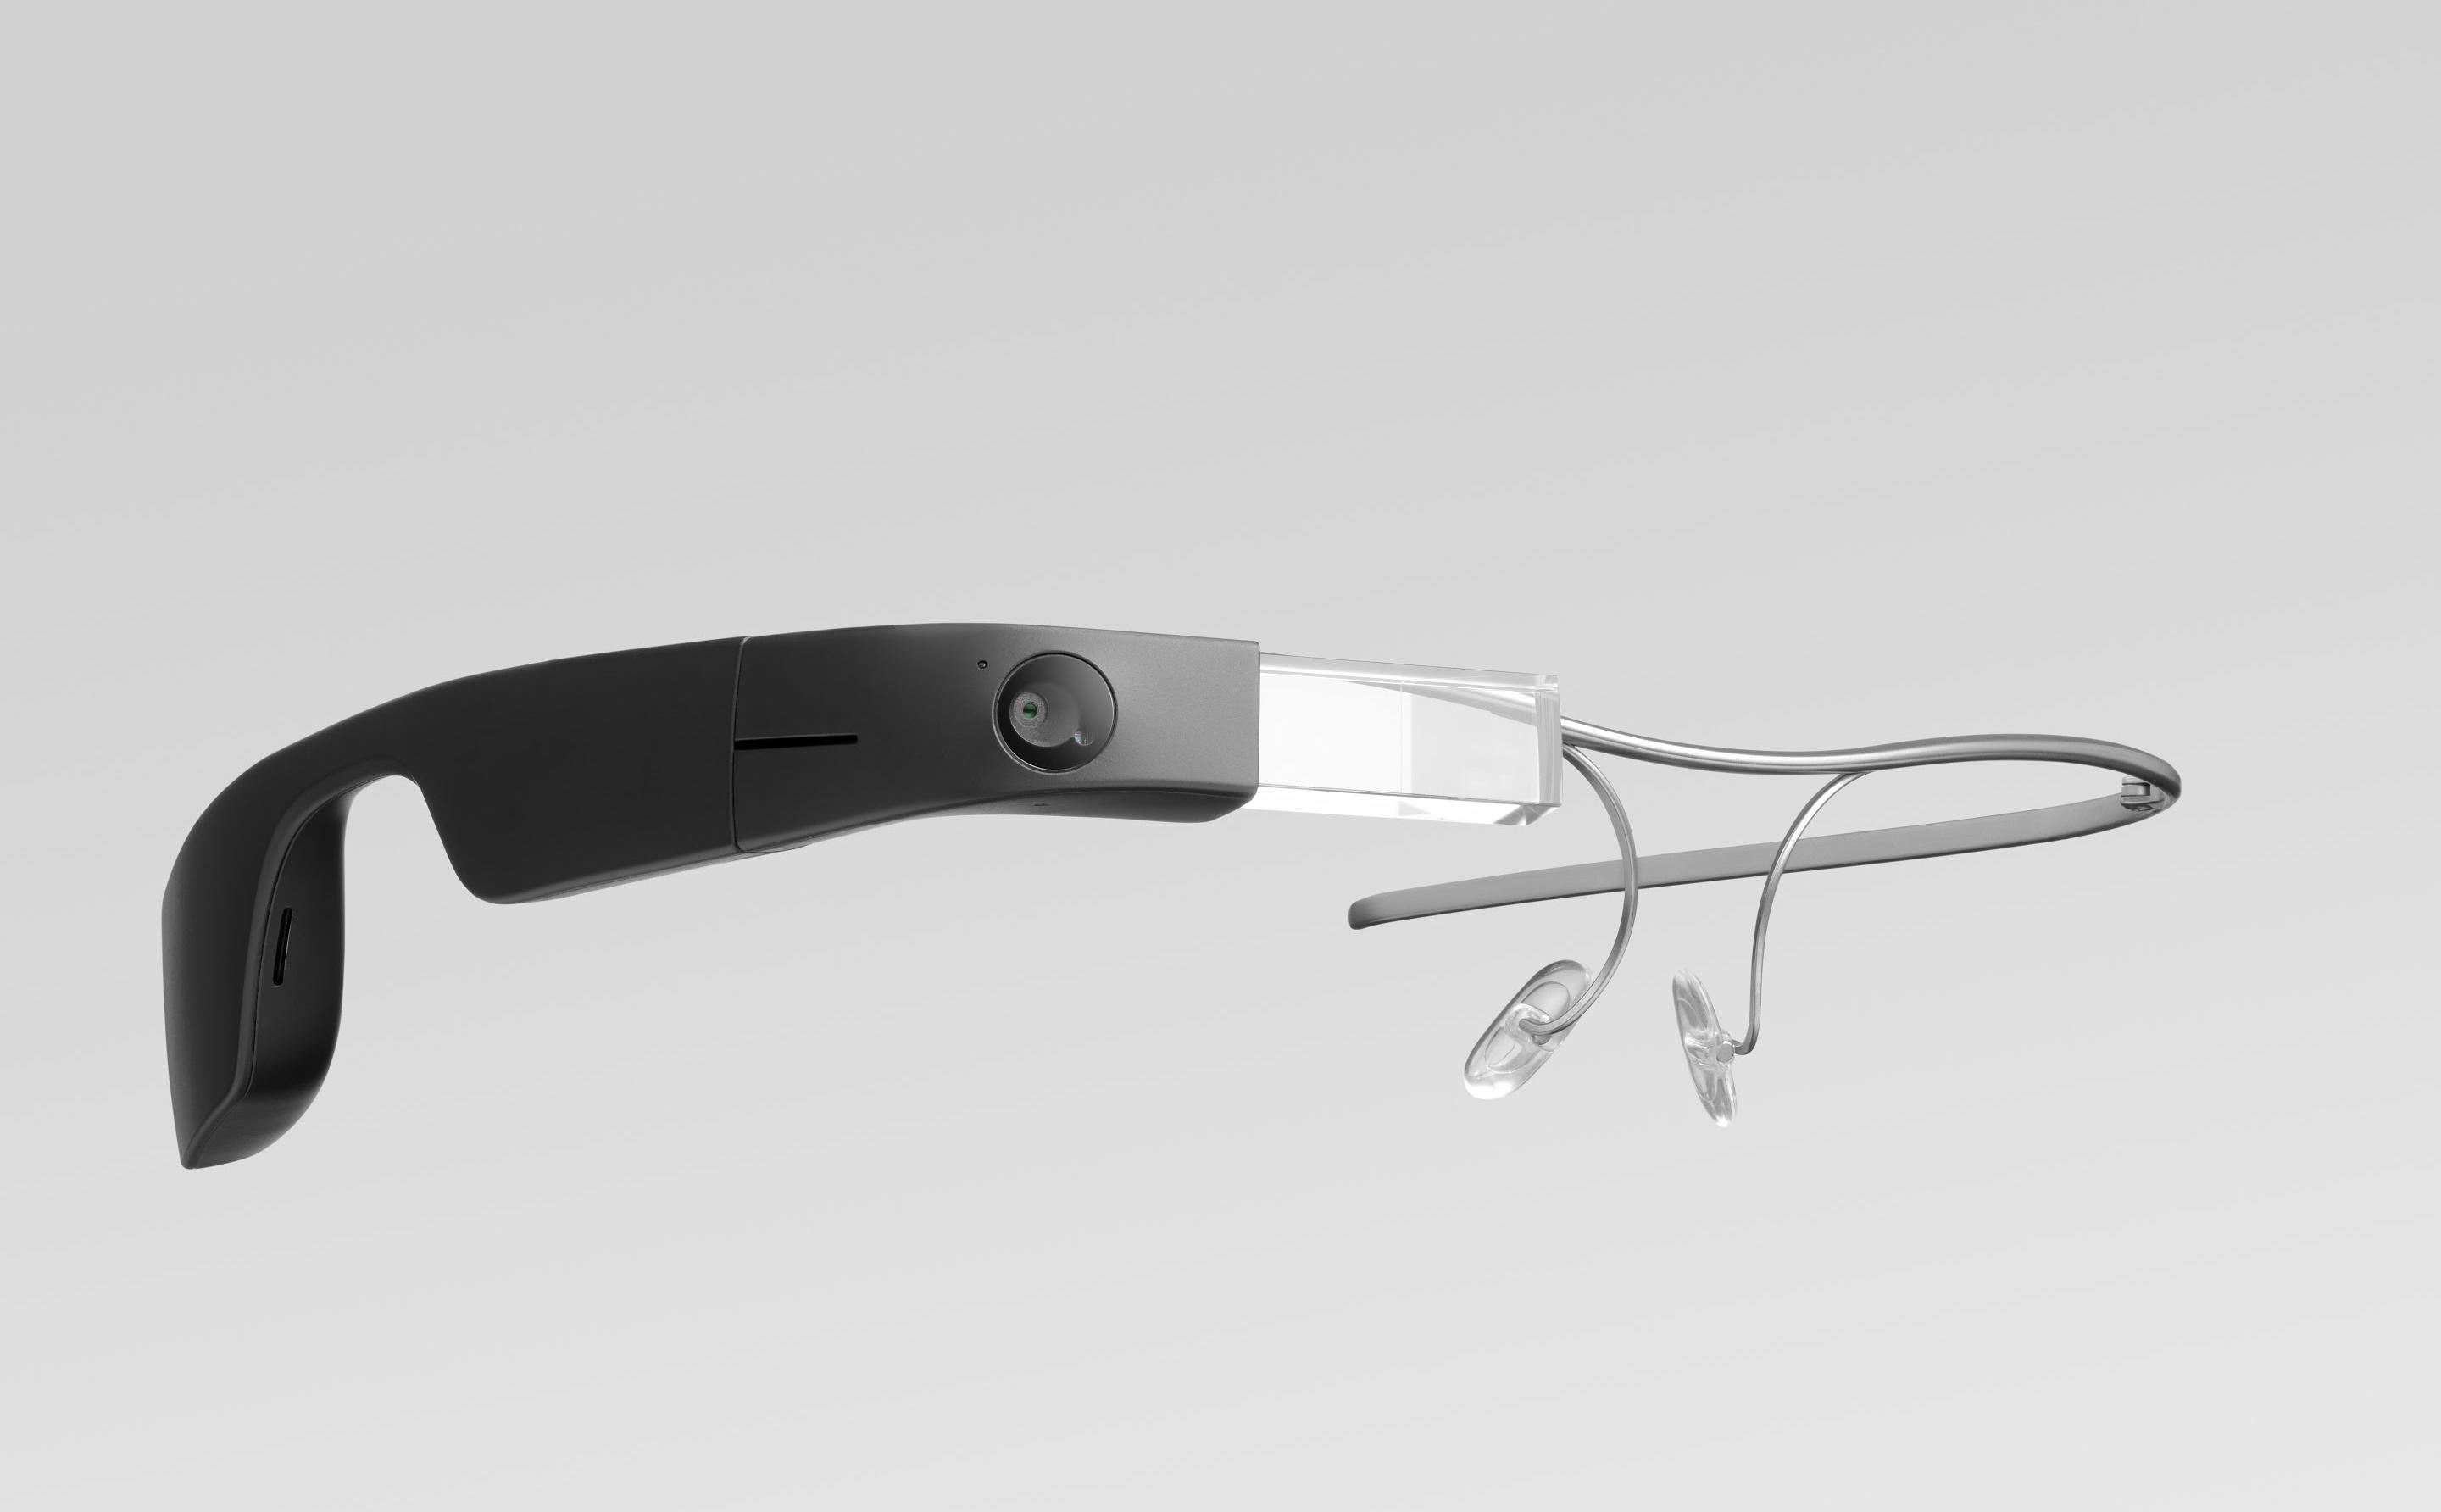 Google Glass Enterprise Edition 2 chính thức ra mắt, chip Qualcomm XR1, pin 8 giờ, giá 1000$